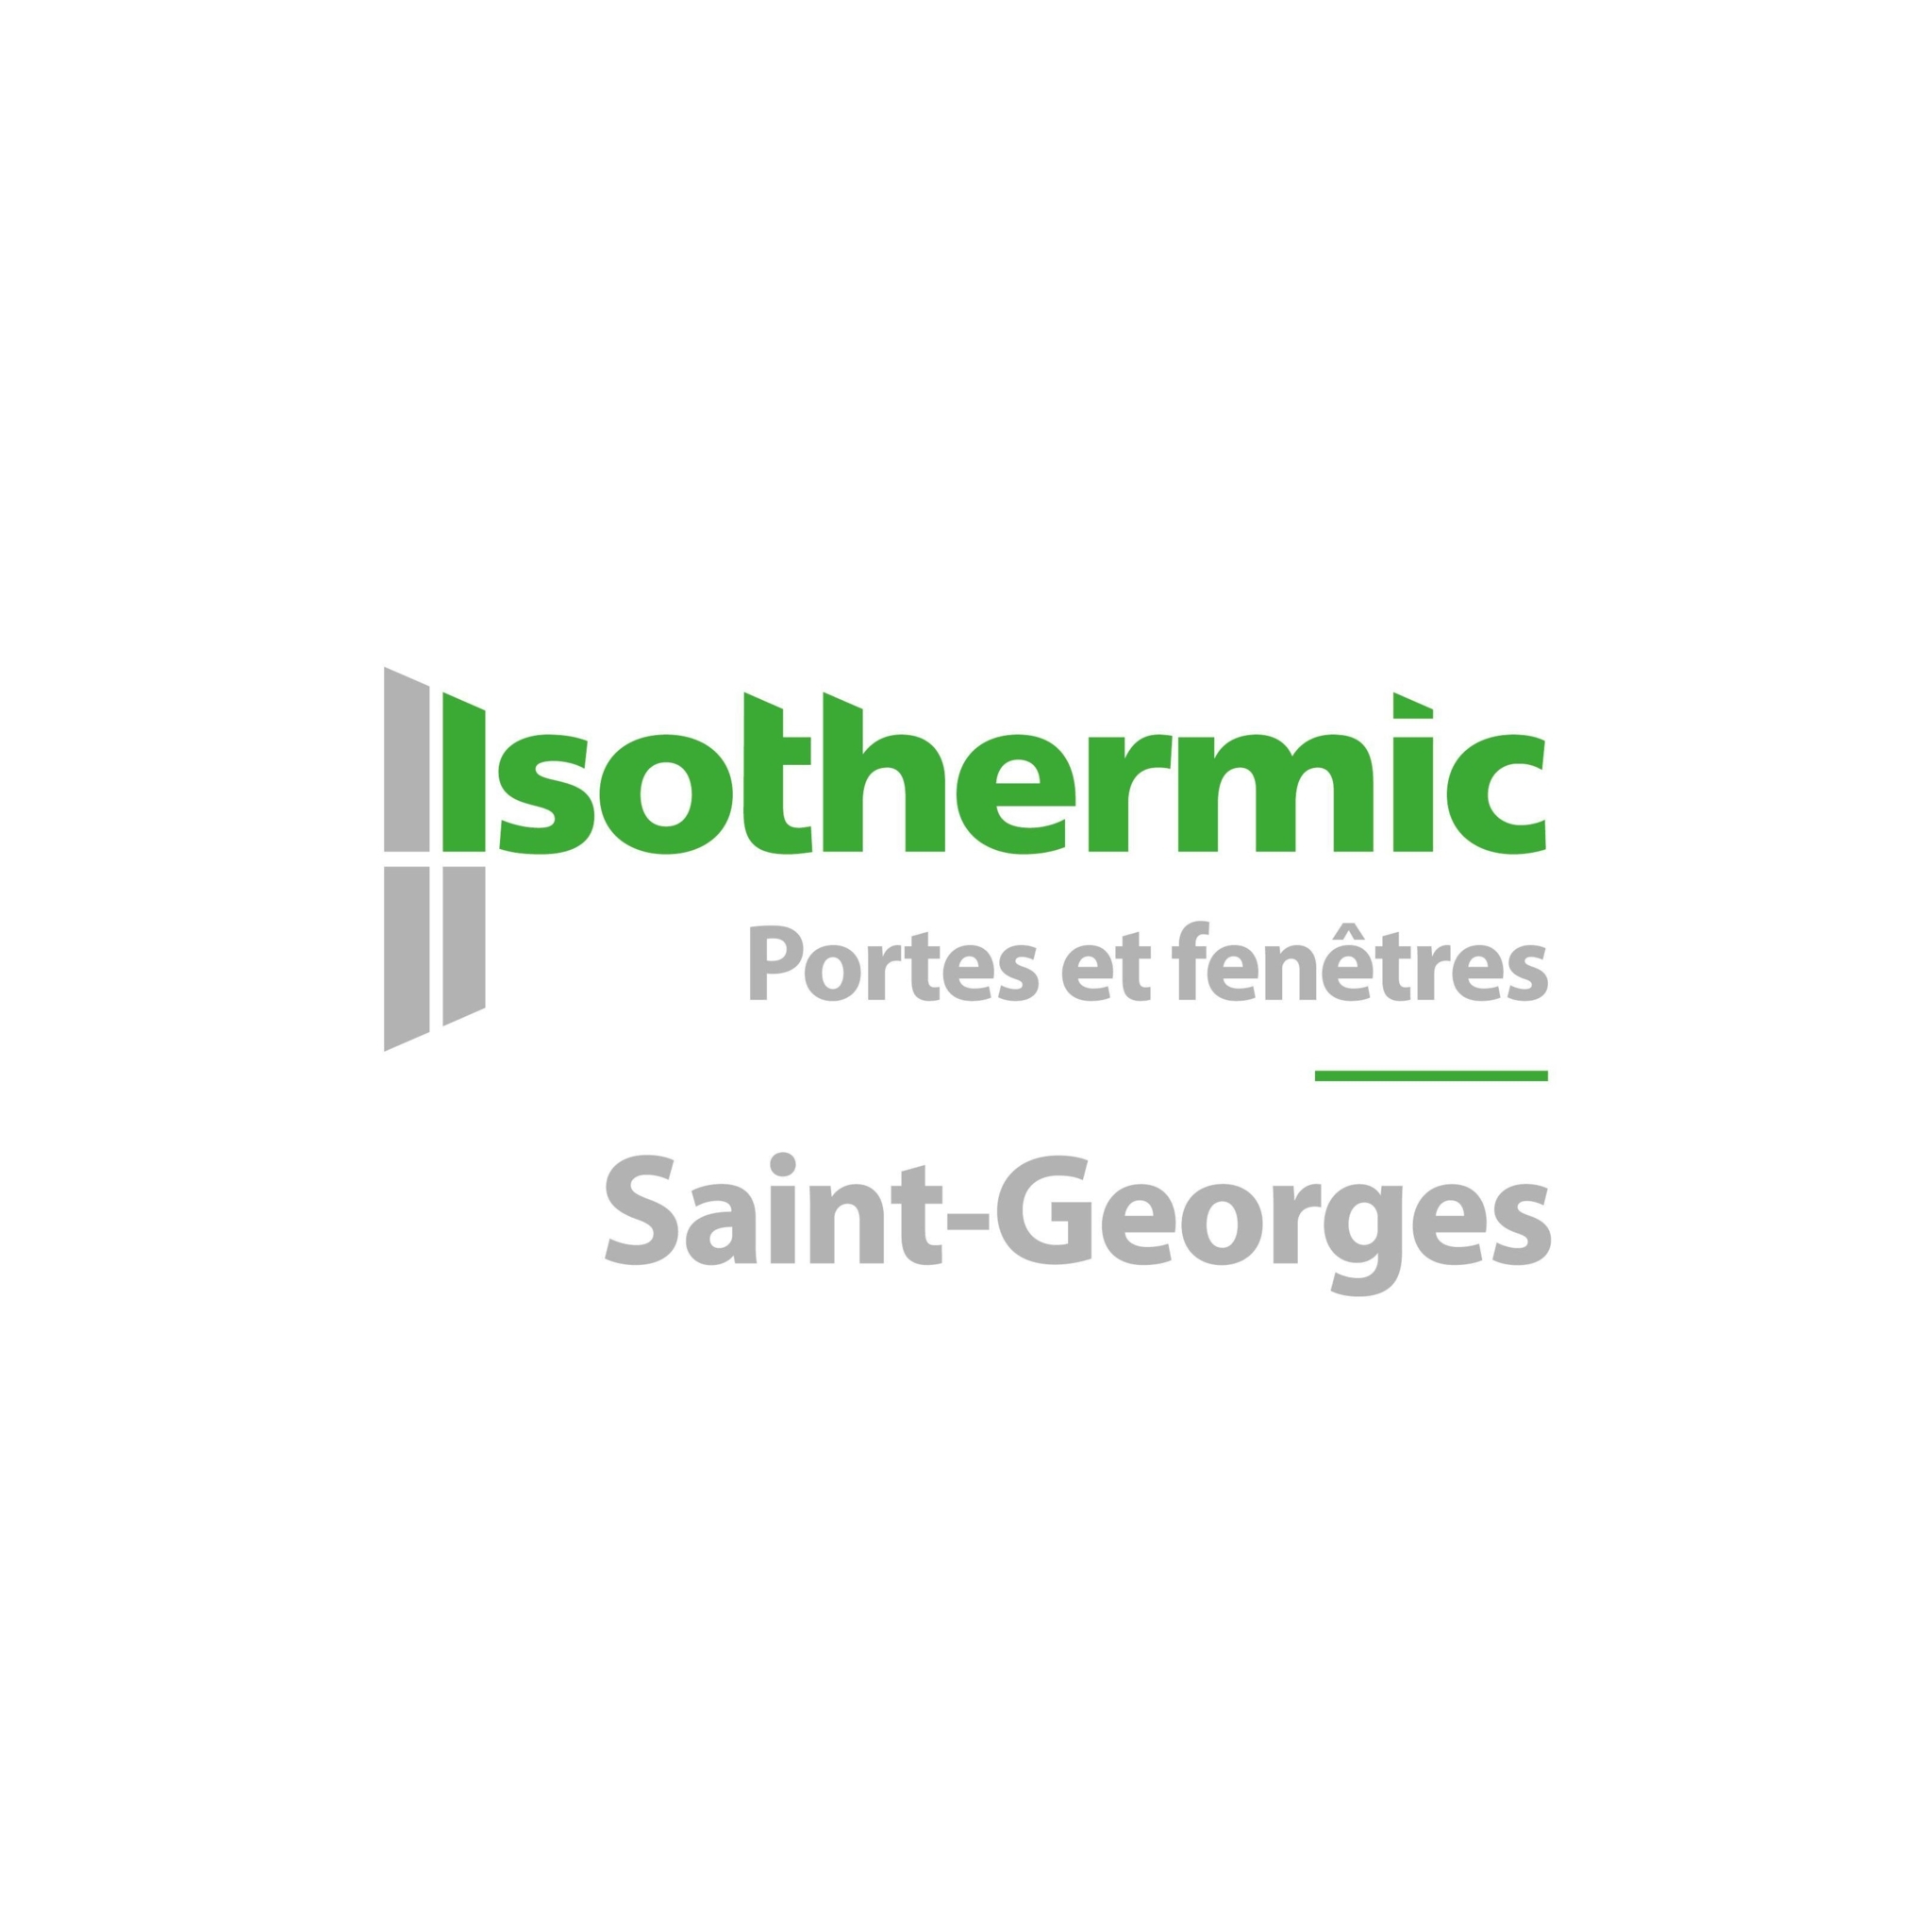 Isothermic portes et fenêtres | Saint-Georges CLOSED - Windows